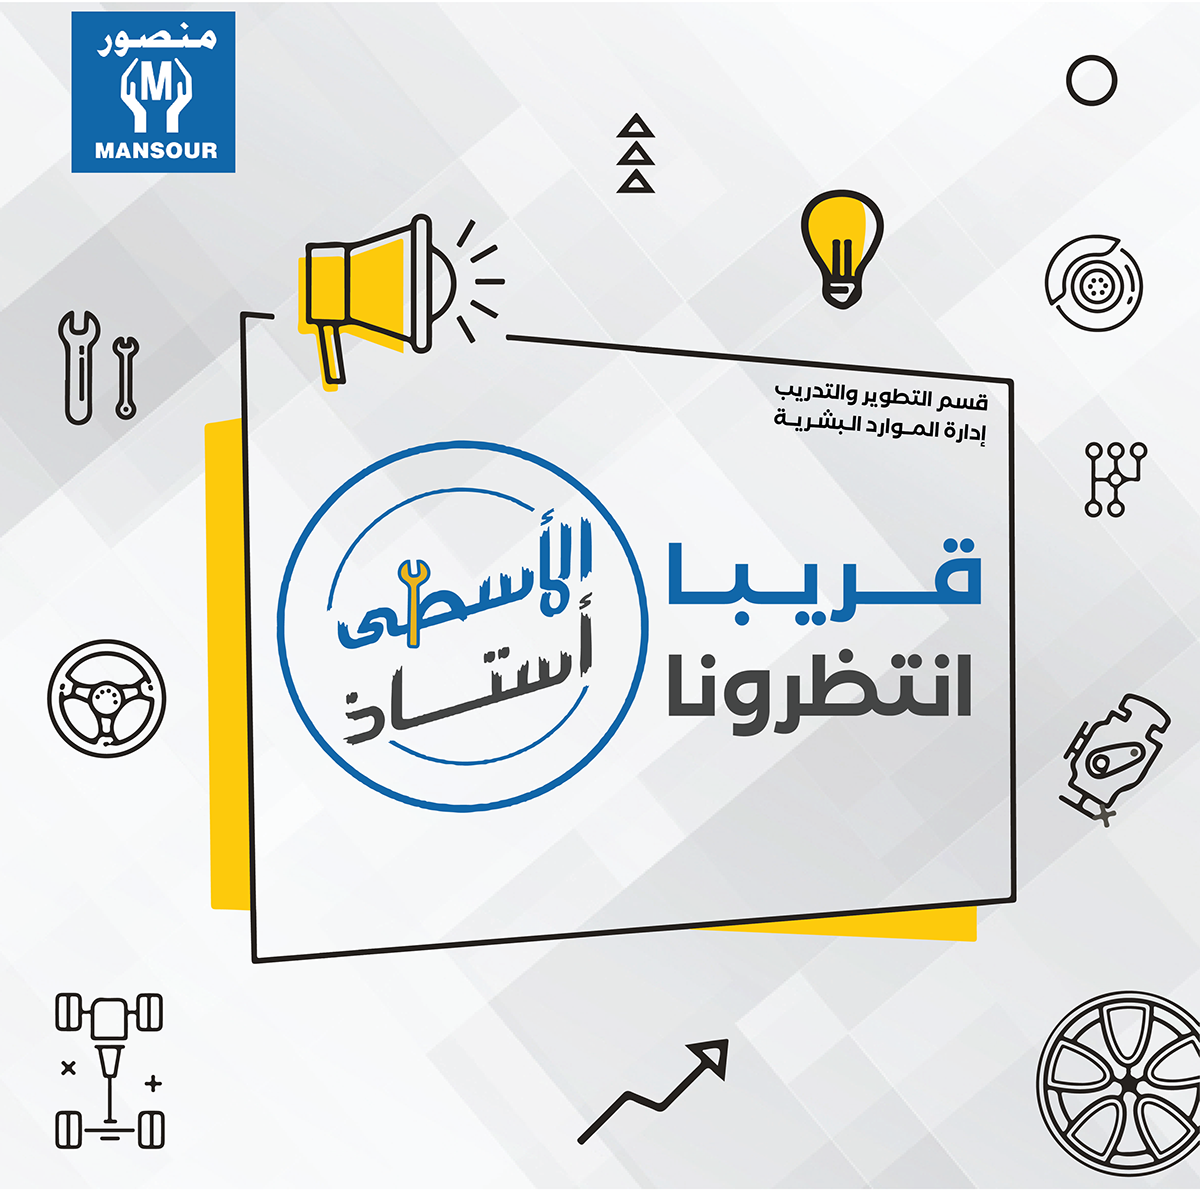 Al-Mansour Automotive HR Department mansour group Social media post